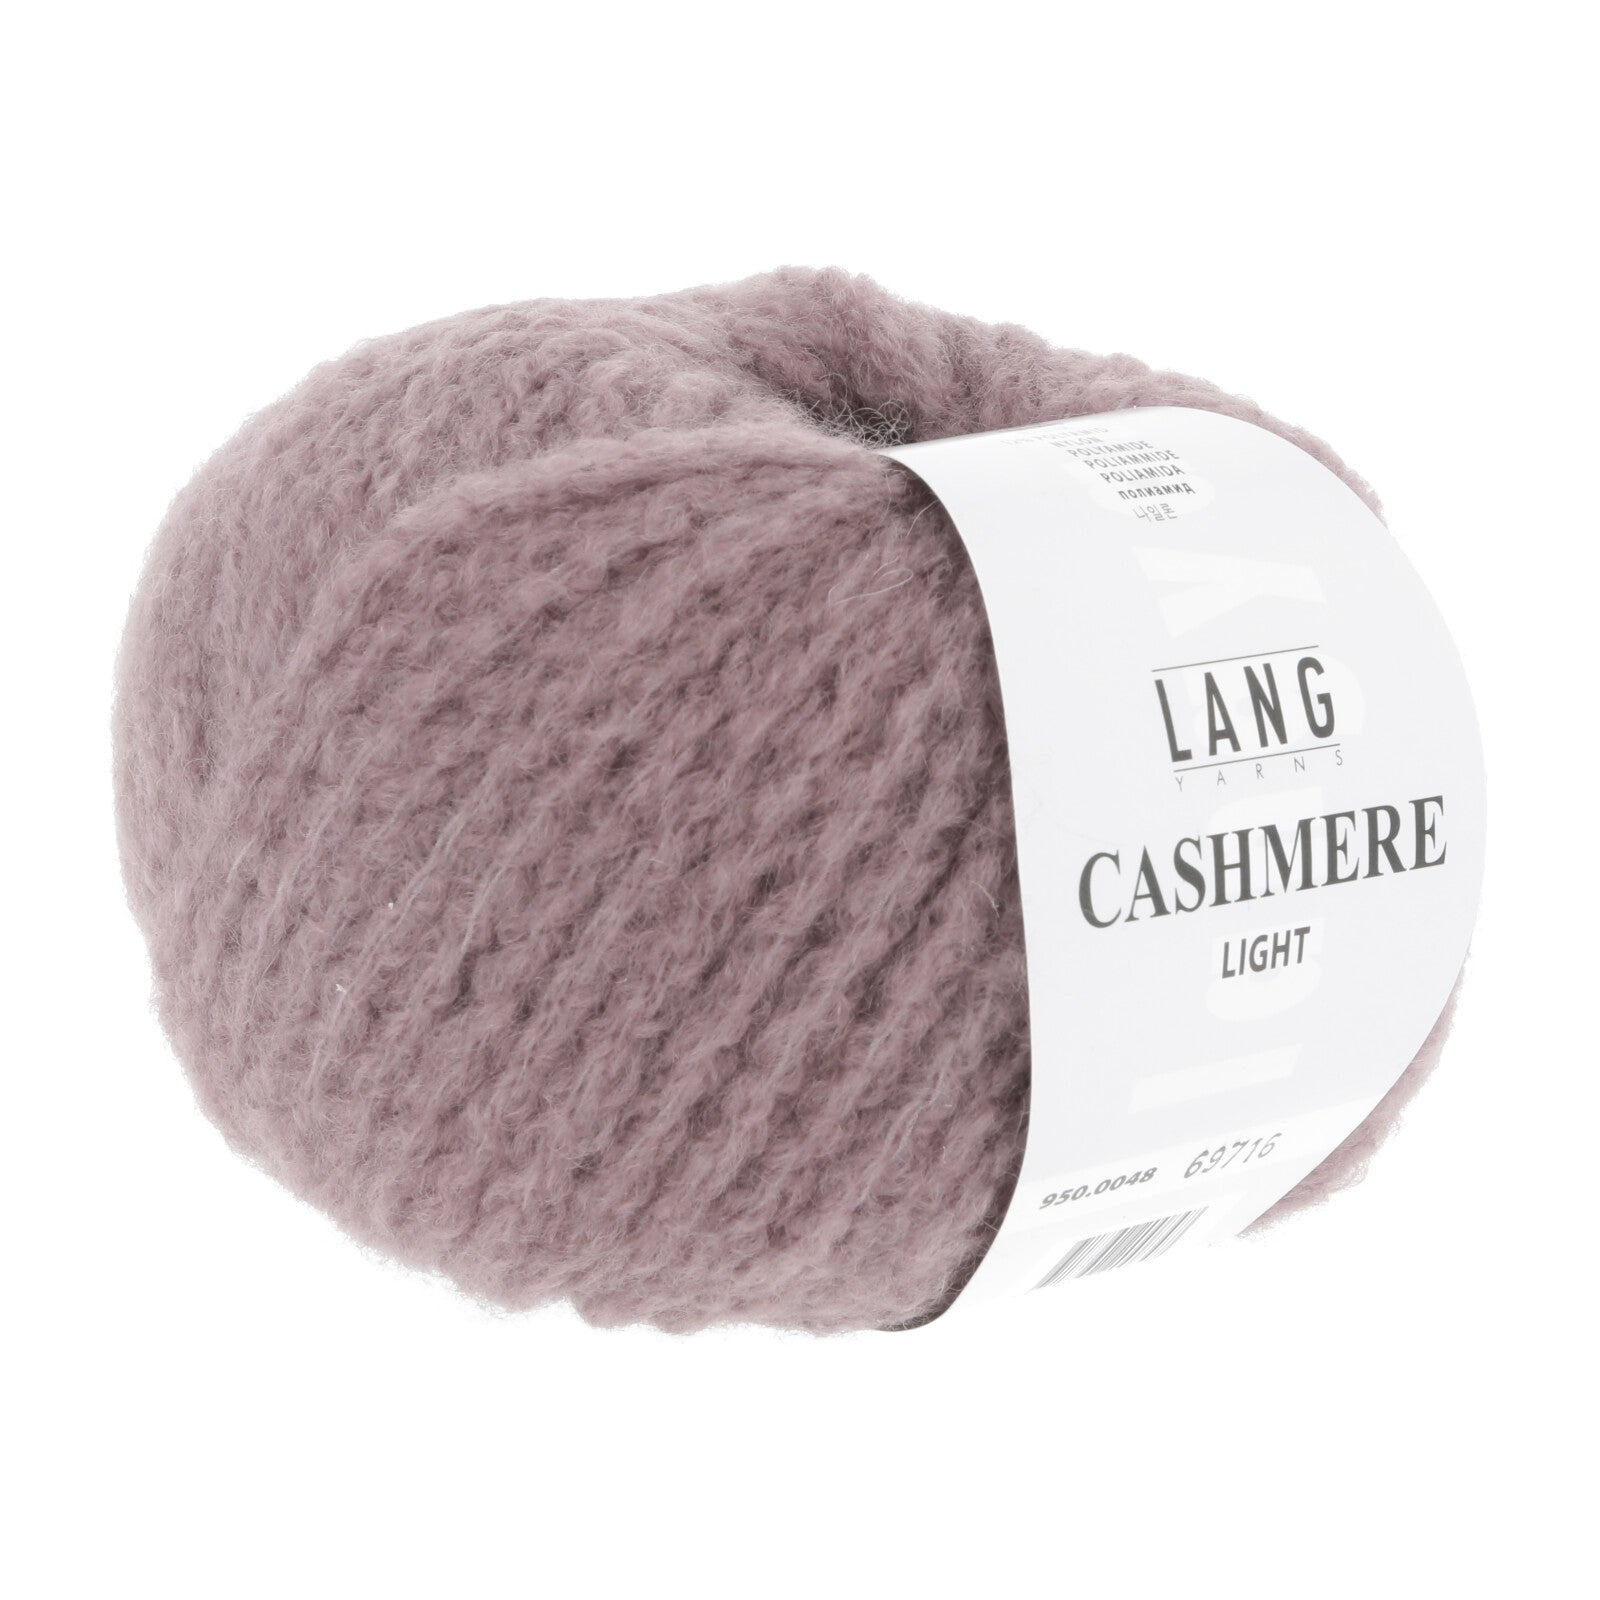 Cashmere Light Cap Kit